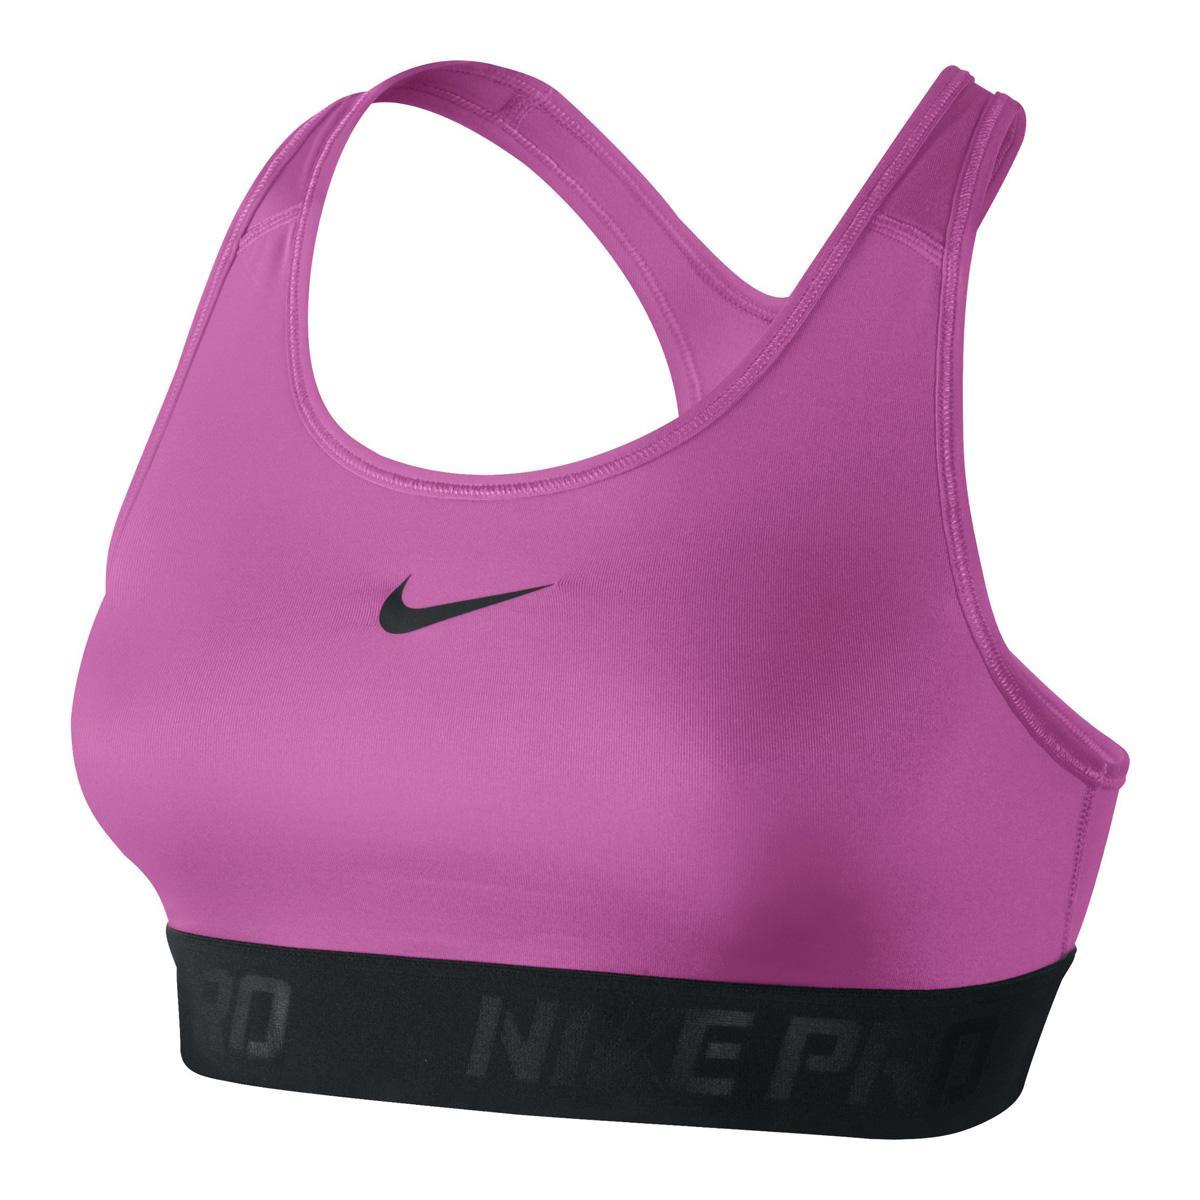 Nike Pro HyperCool Sports Bra - Pink/Black - Tennisnuts.com